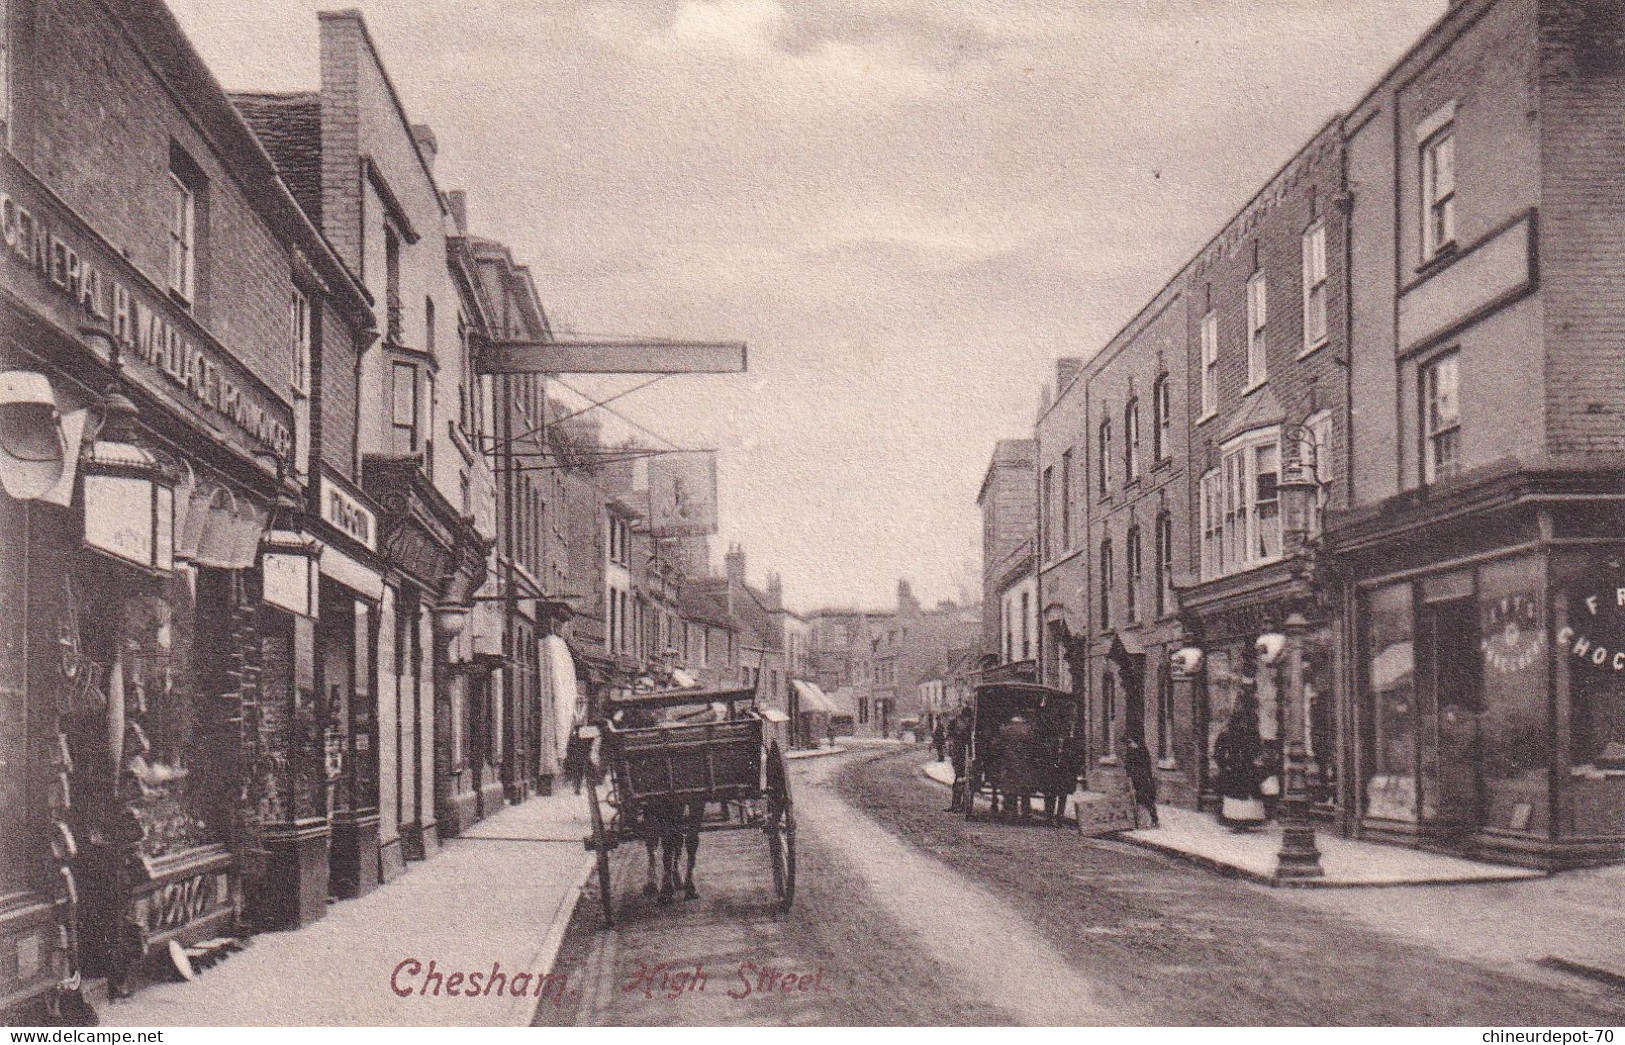 Chesham High Street - Buckinghamshire